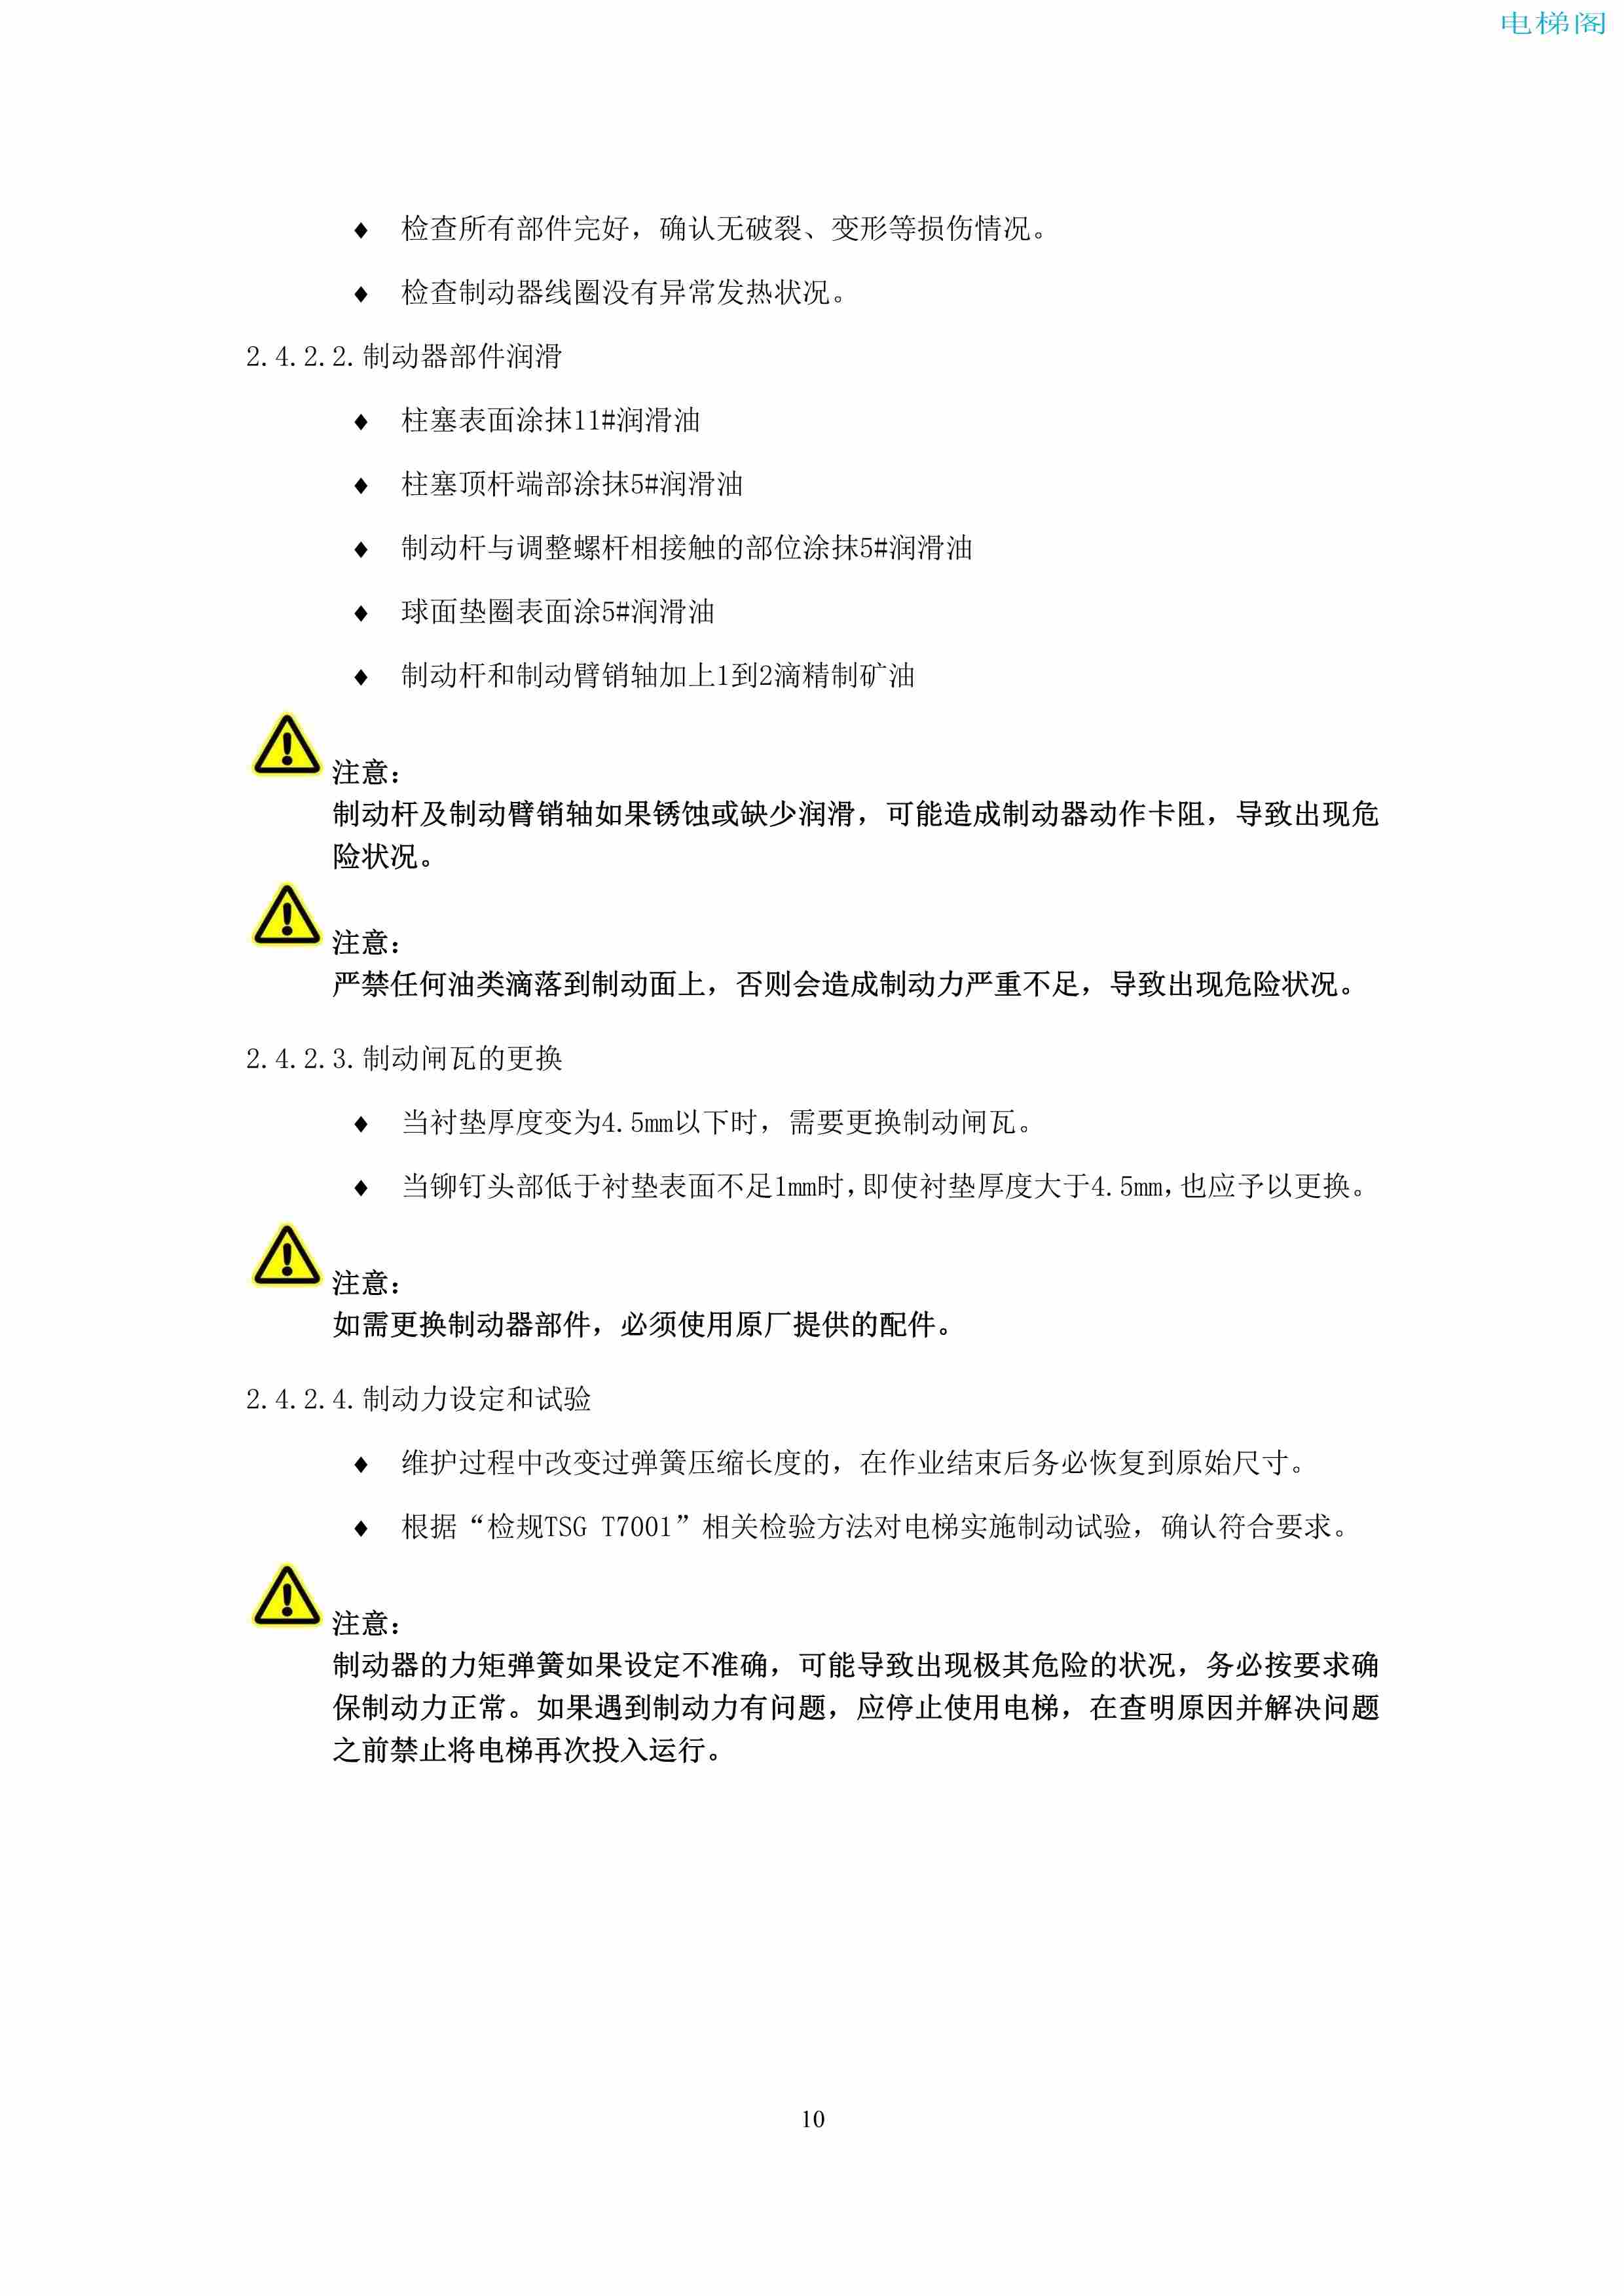 上海三菱电梯有限公司电梯制动器维护作业要领汇编_12.jpg